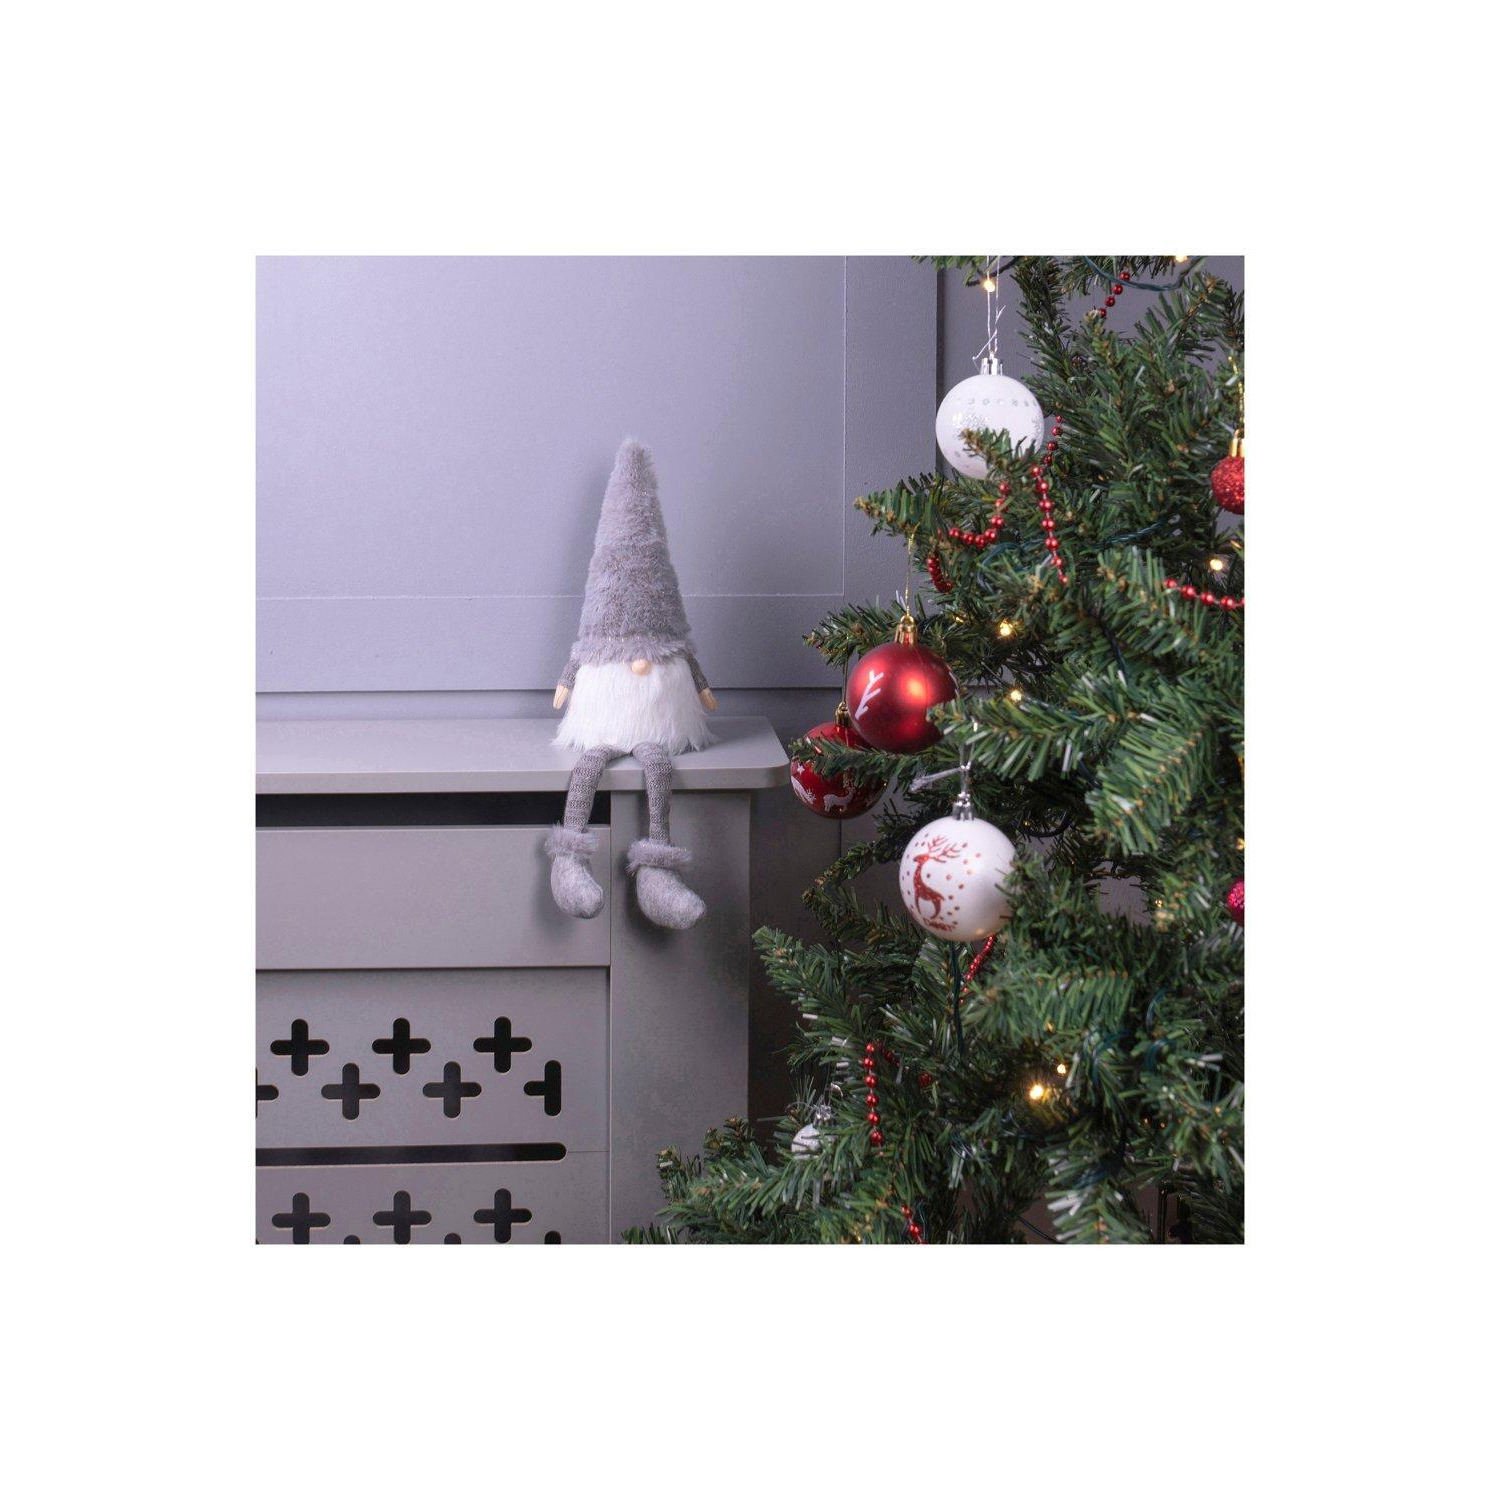 Netagon Home Christmas Long Legged Christmas Gonk Decoration- Grey - image 1